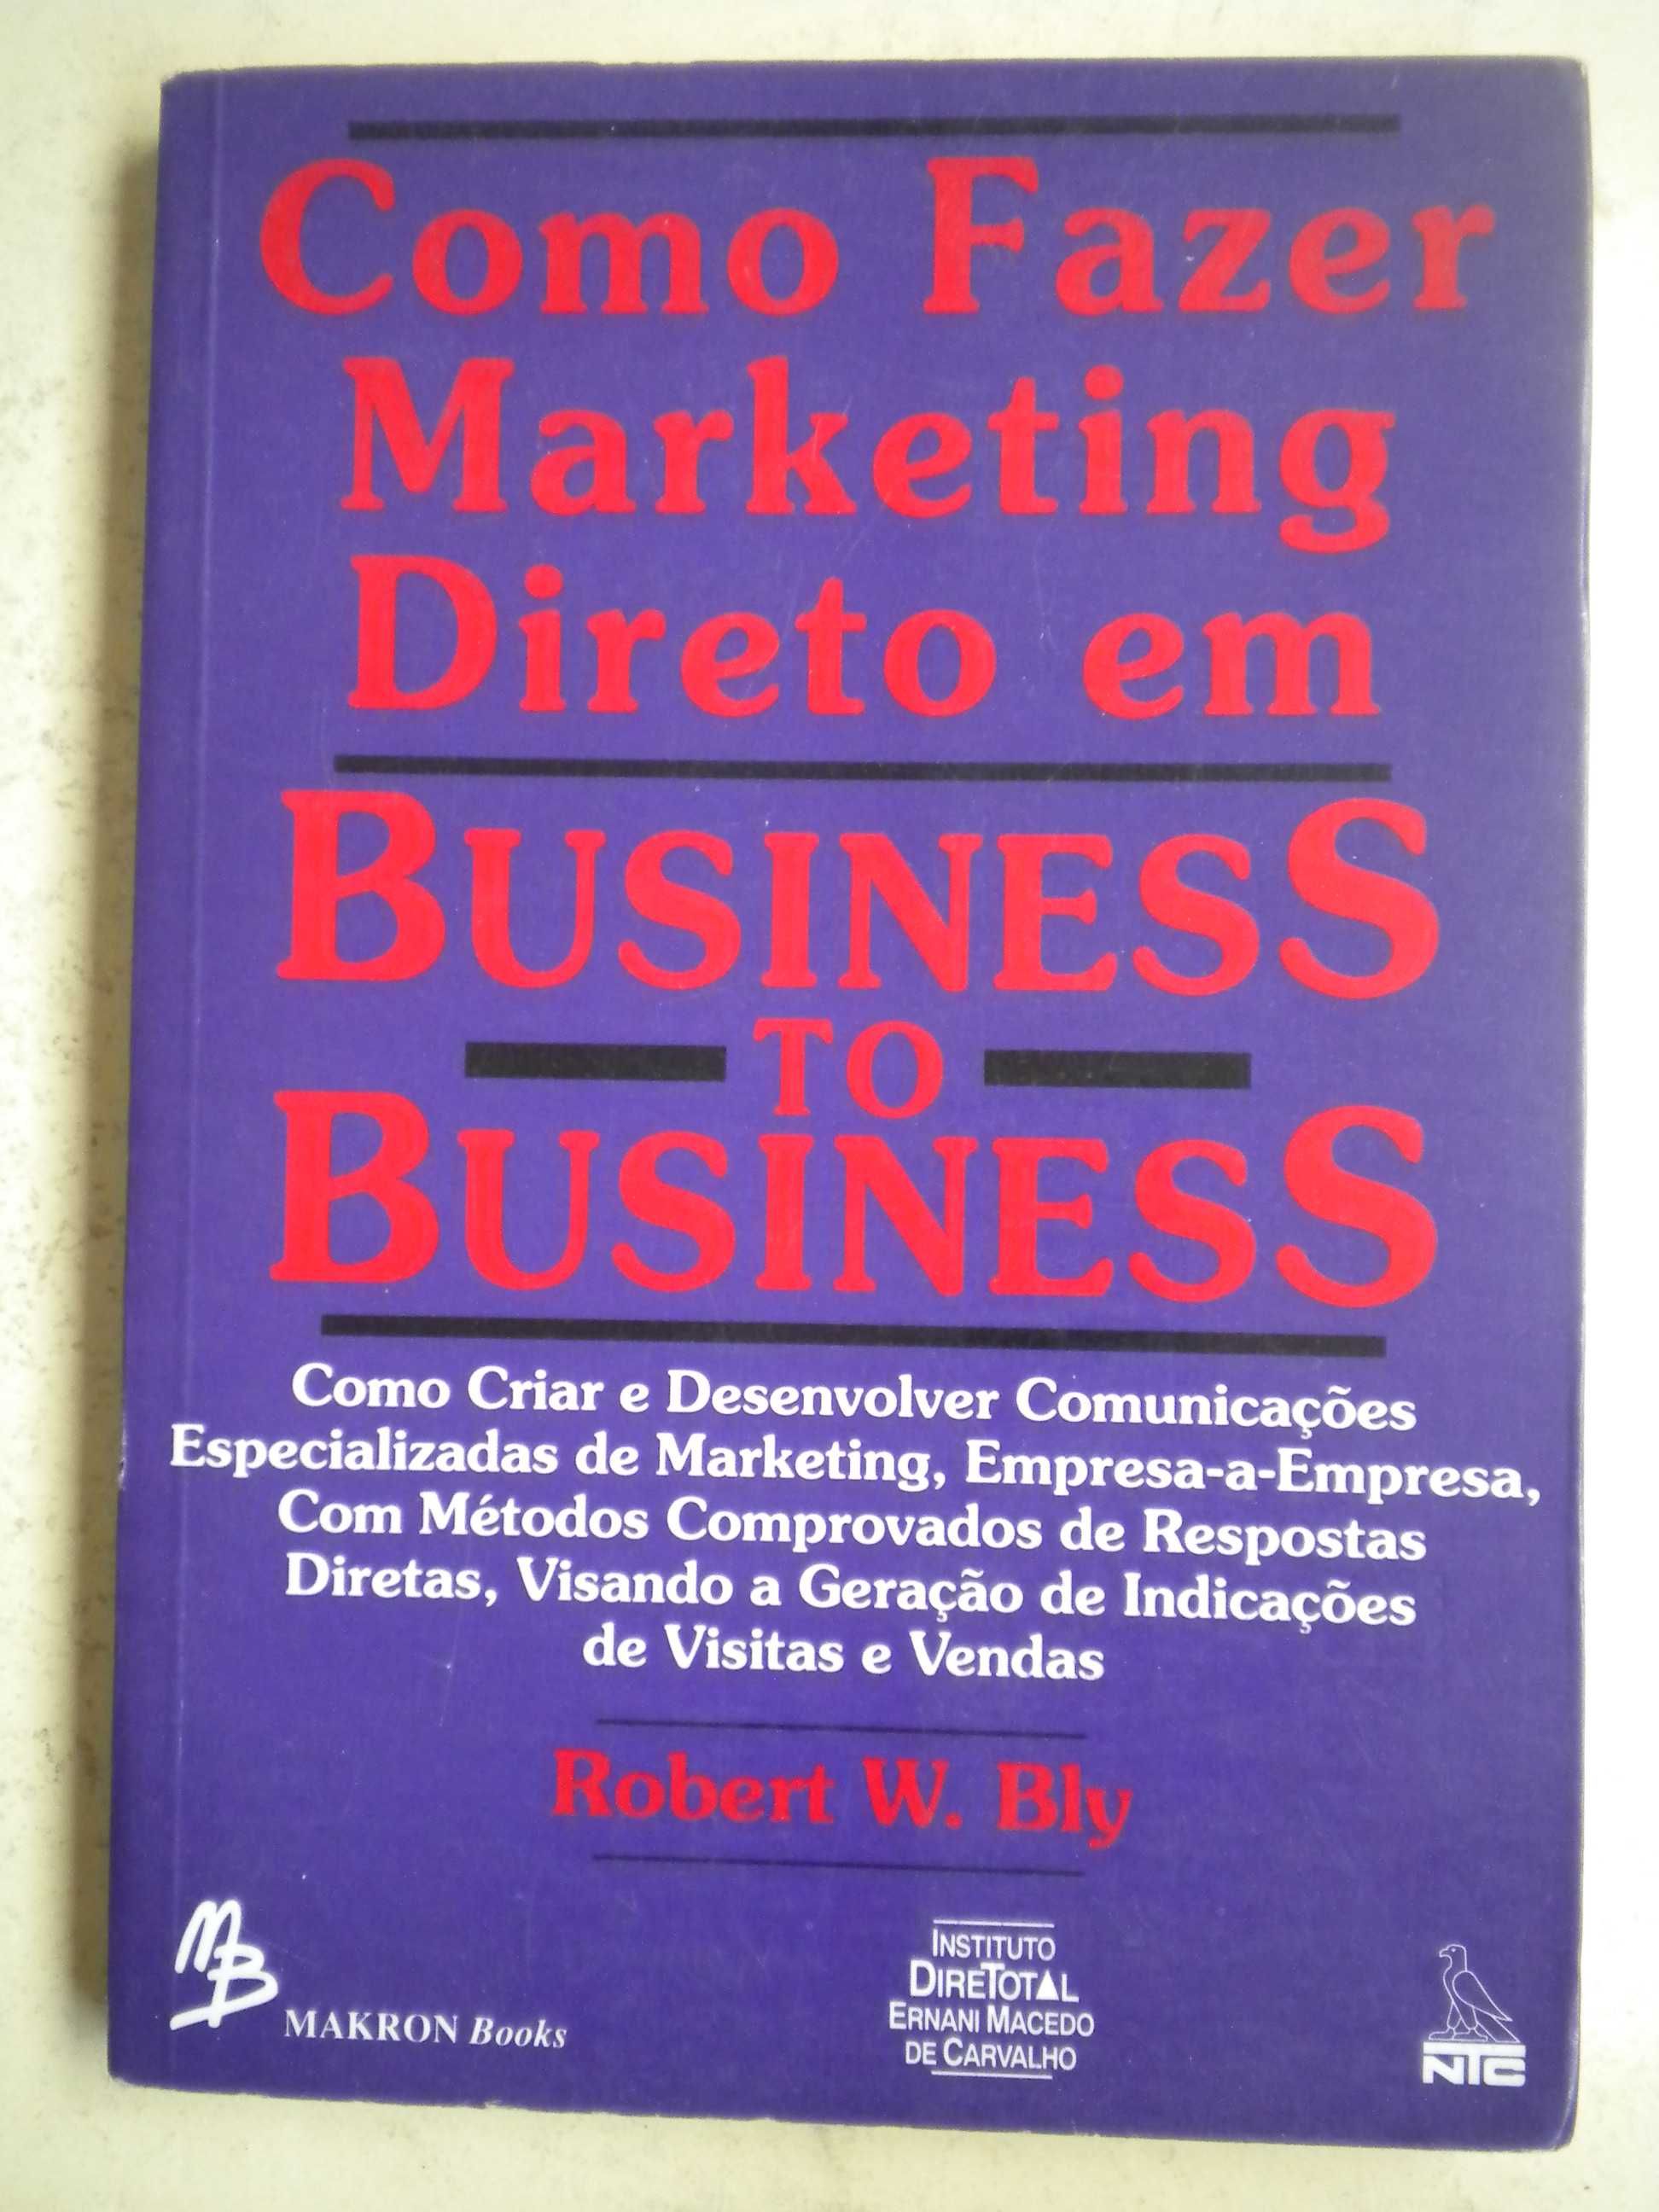 Como fazer Marketing direto em Business to Business
de Robert W. Bly